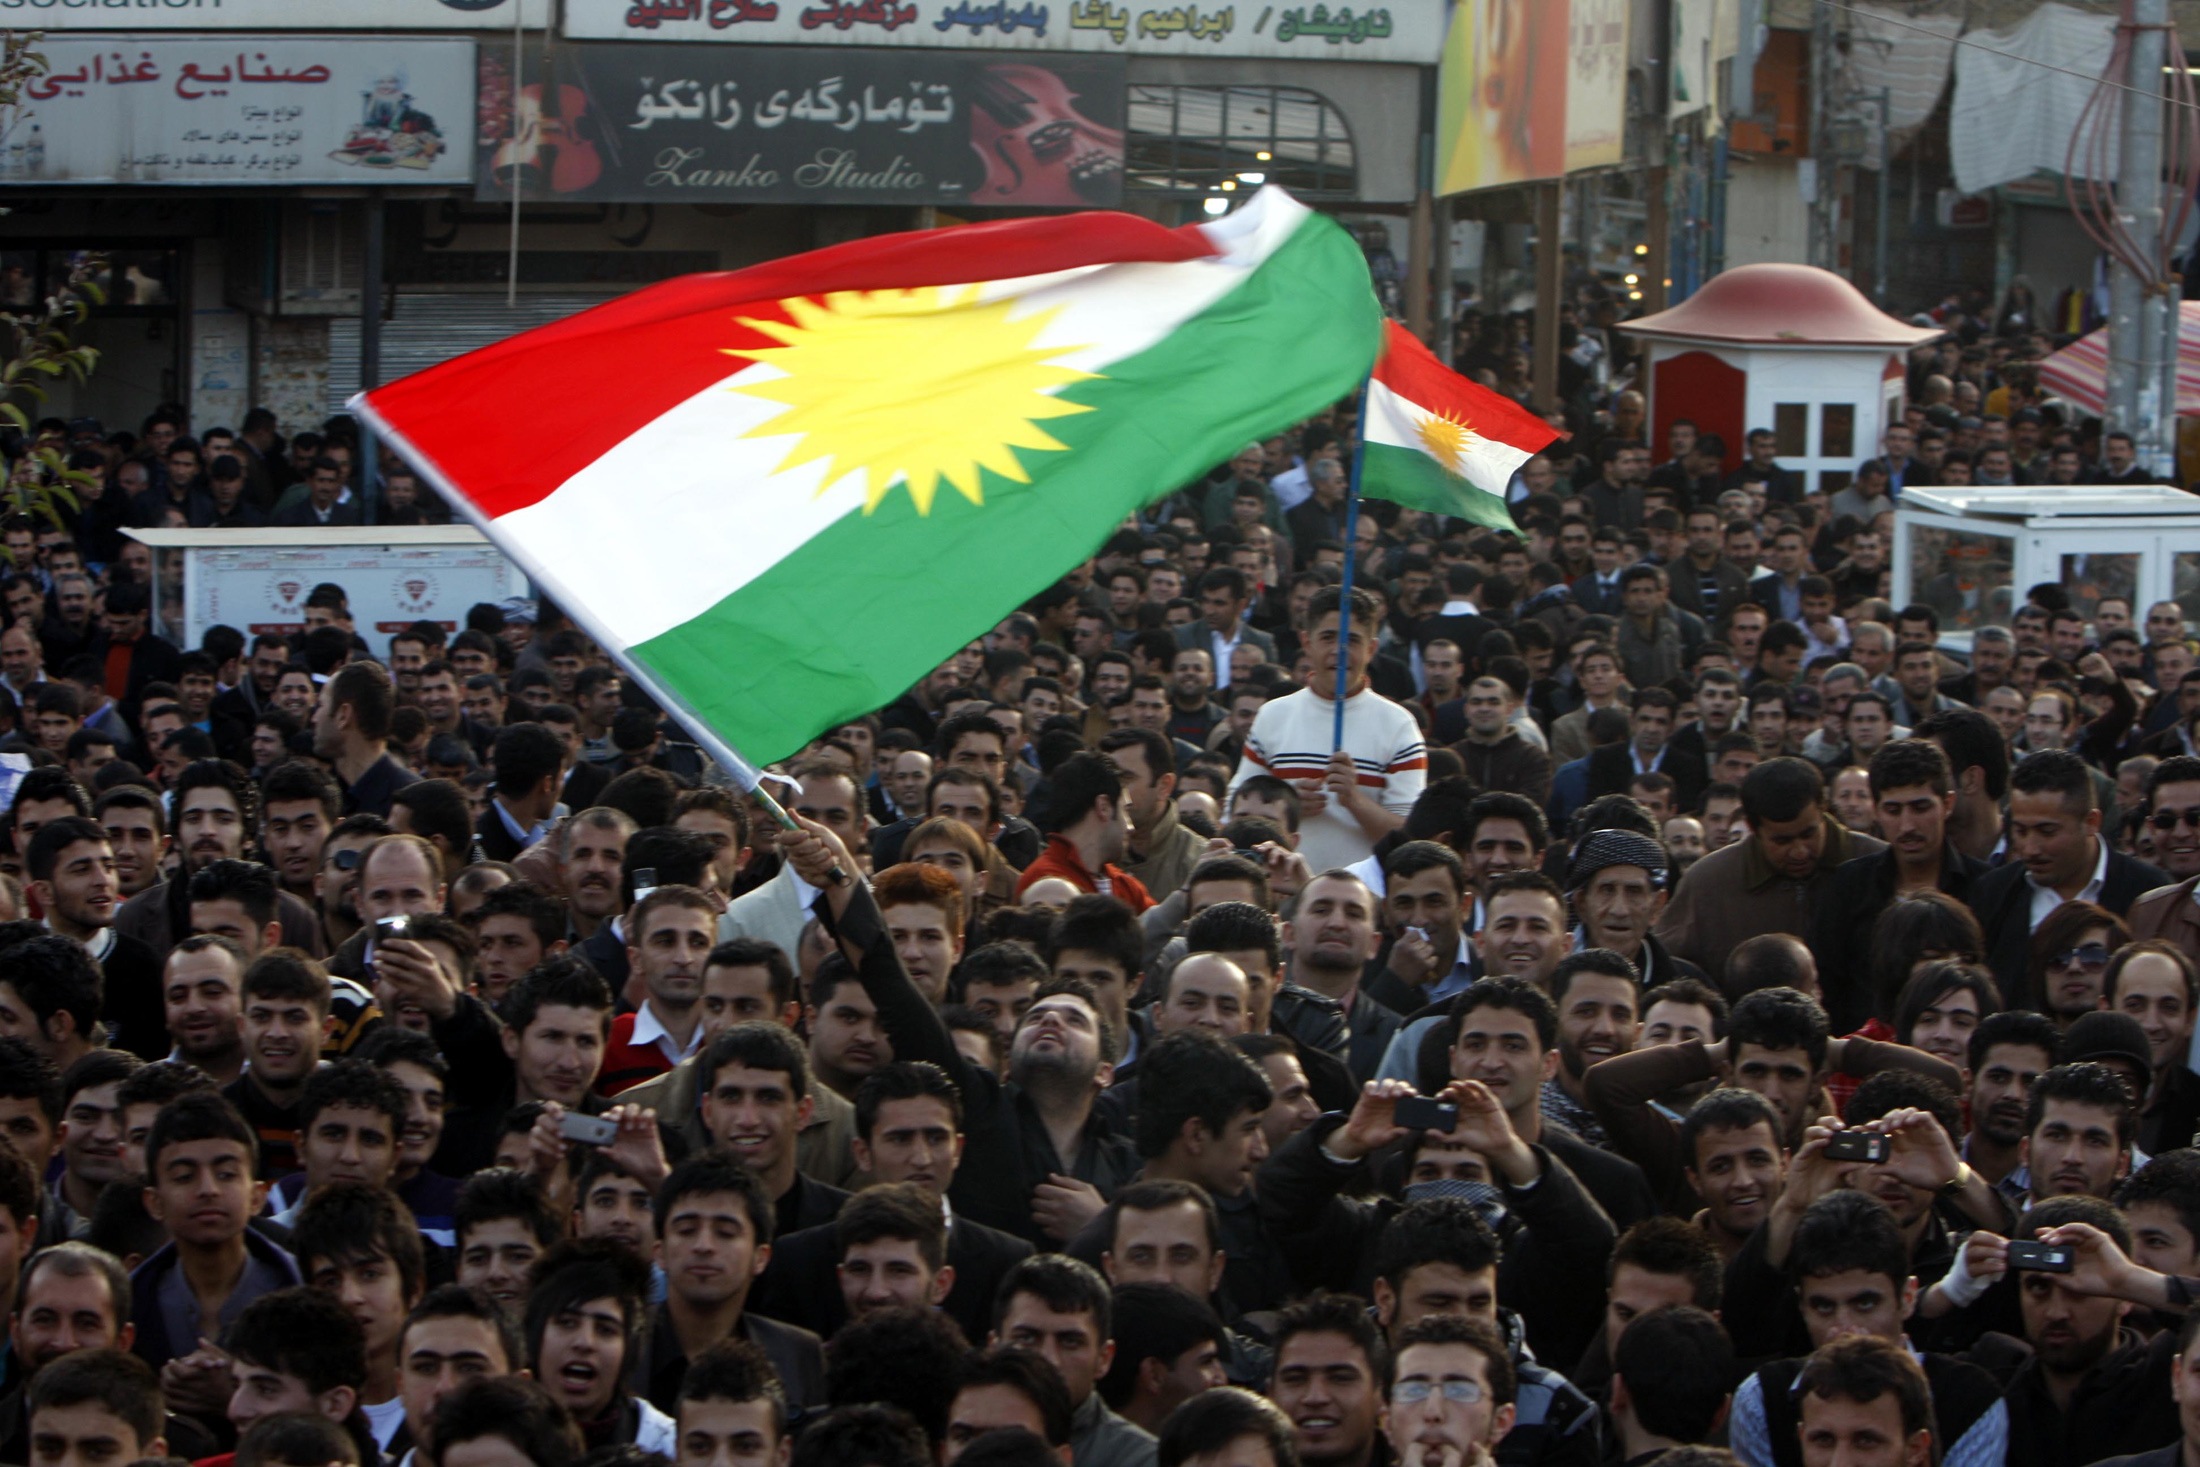 Aντίθετος στην ανεξαρτησία του Ιρακινού Κουρδιστάν ο θρησκευτικός ηγέτης σιιτών